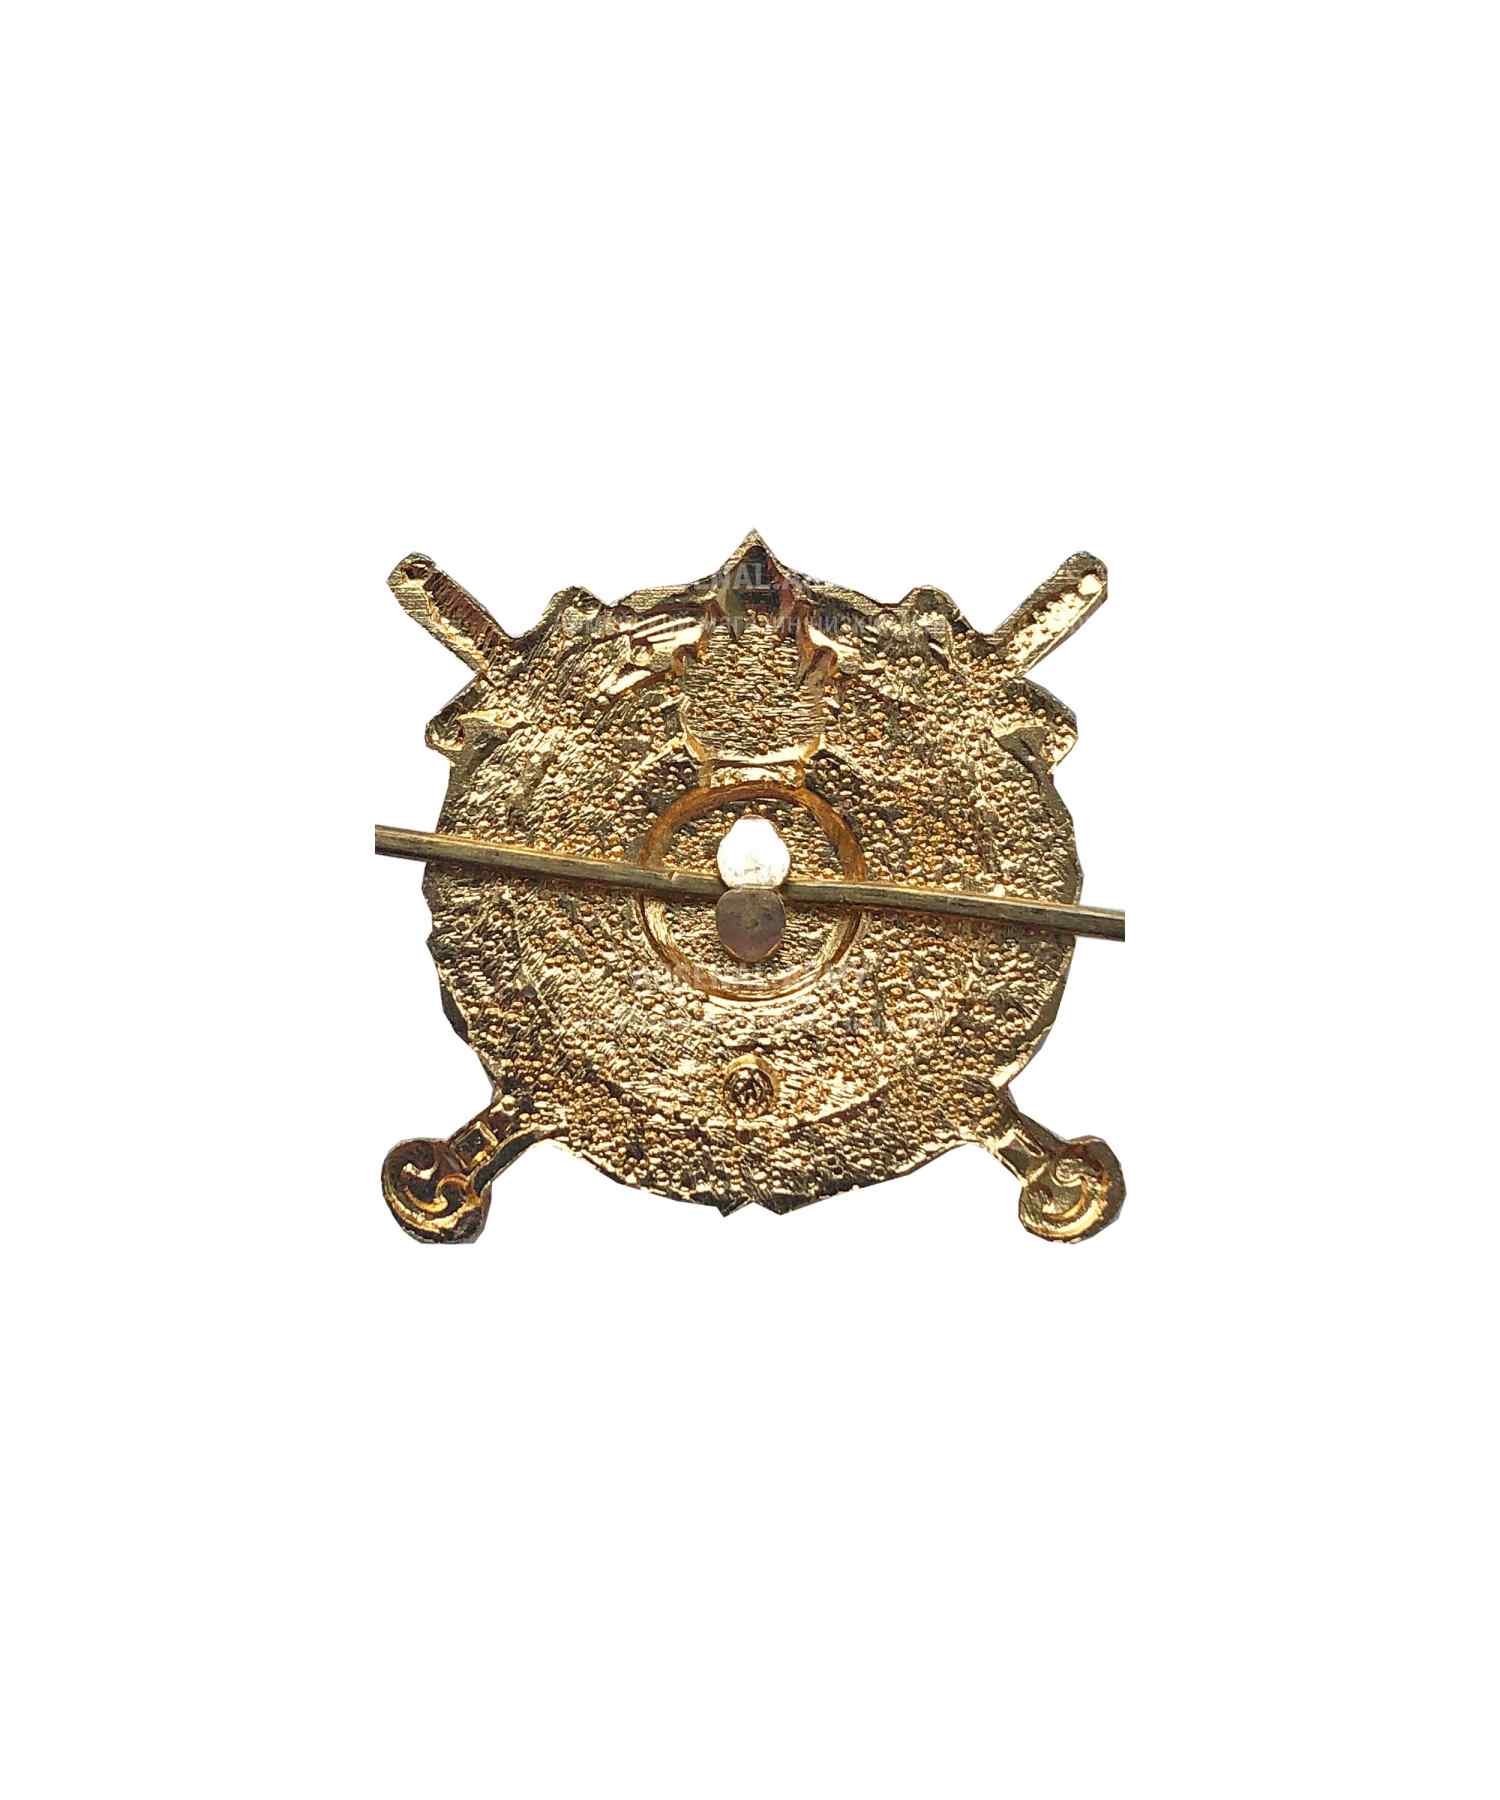 Эмблема ВВ МВД металлическая золото